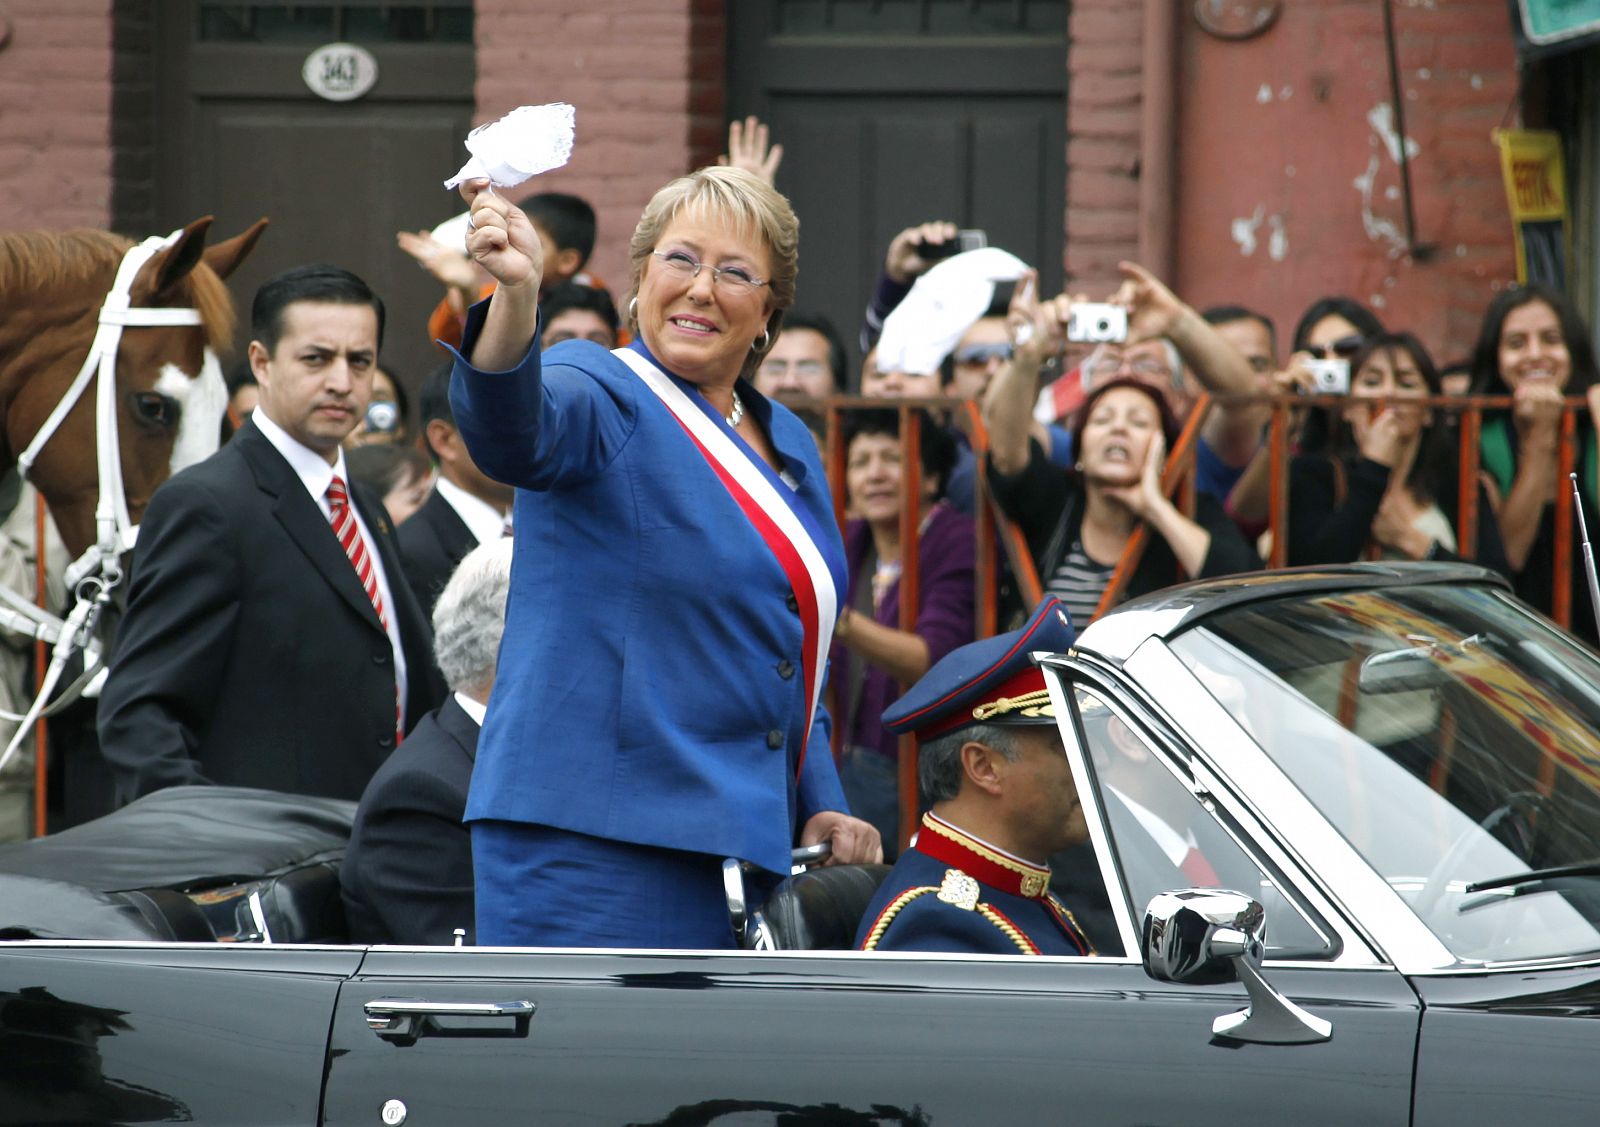 La presidenta saliente chilena, Michelle Bachelet, saluda a los miles de incondicionales tras la toma de posesión de Sebastián Piñera.